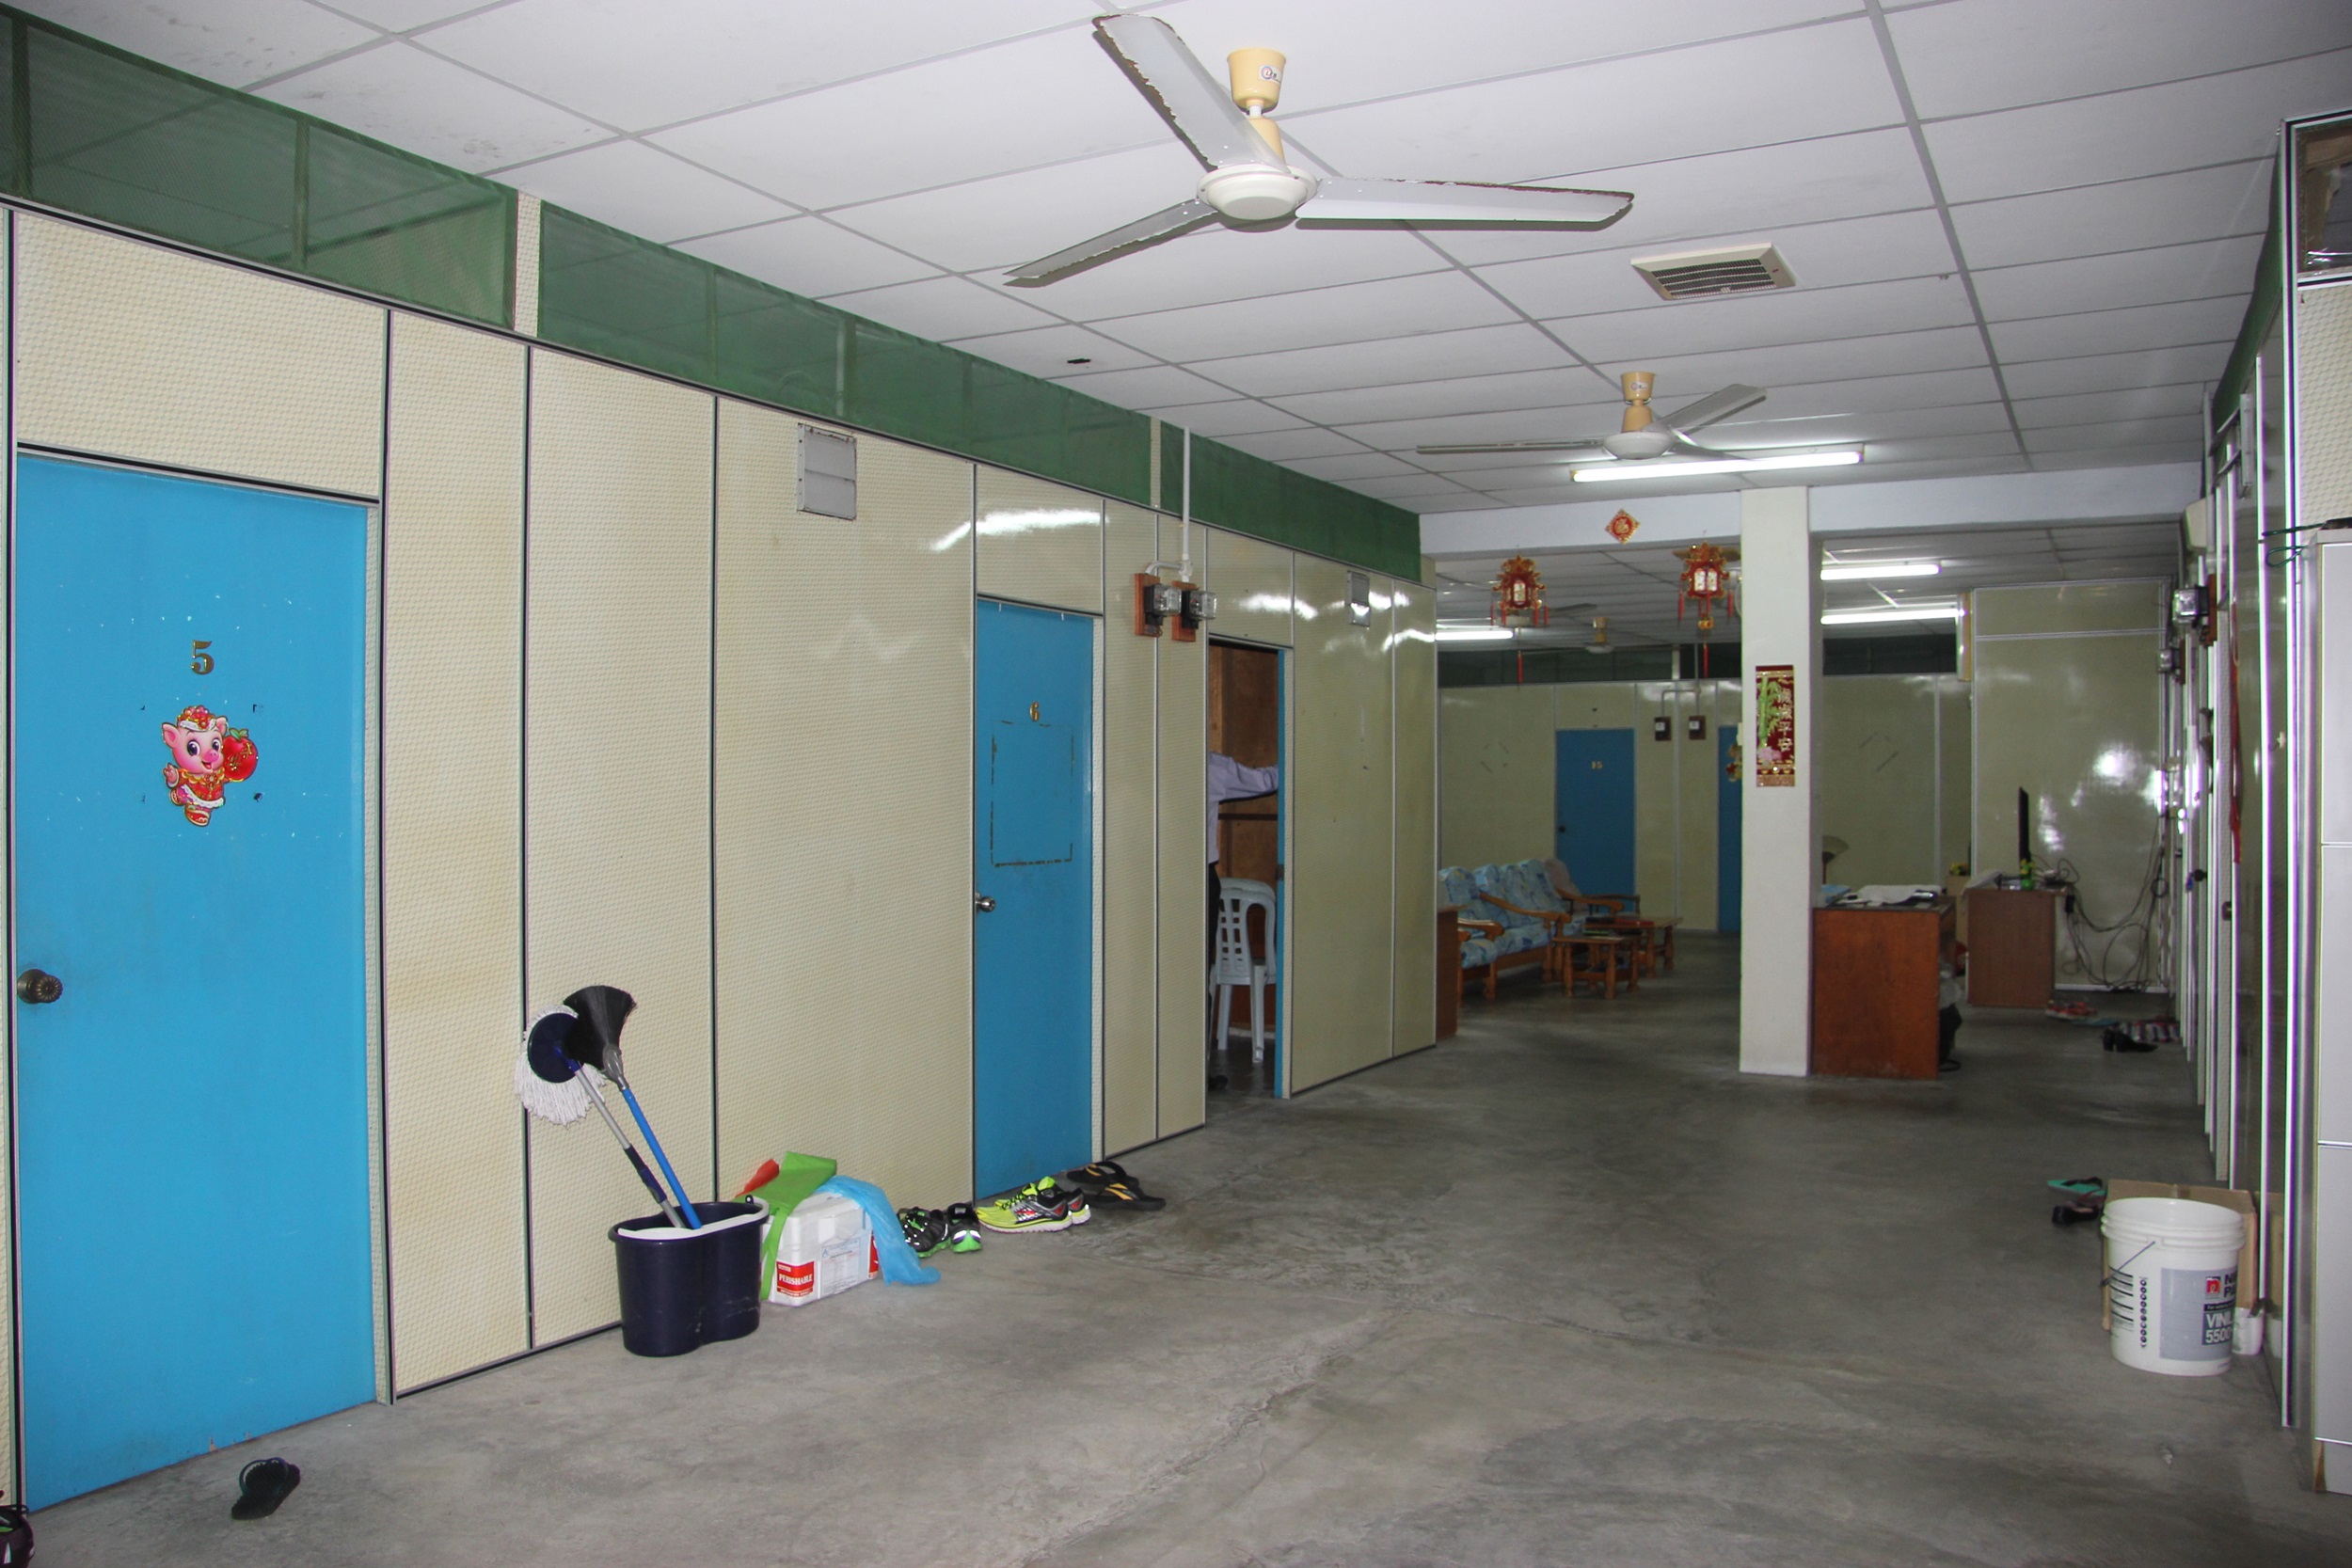 华联华小教师宿舍已超过20年的历史，设备相当简陋，有待改善。